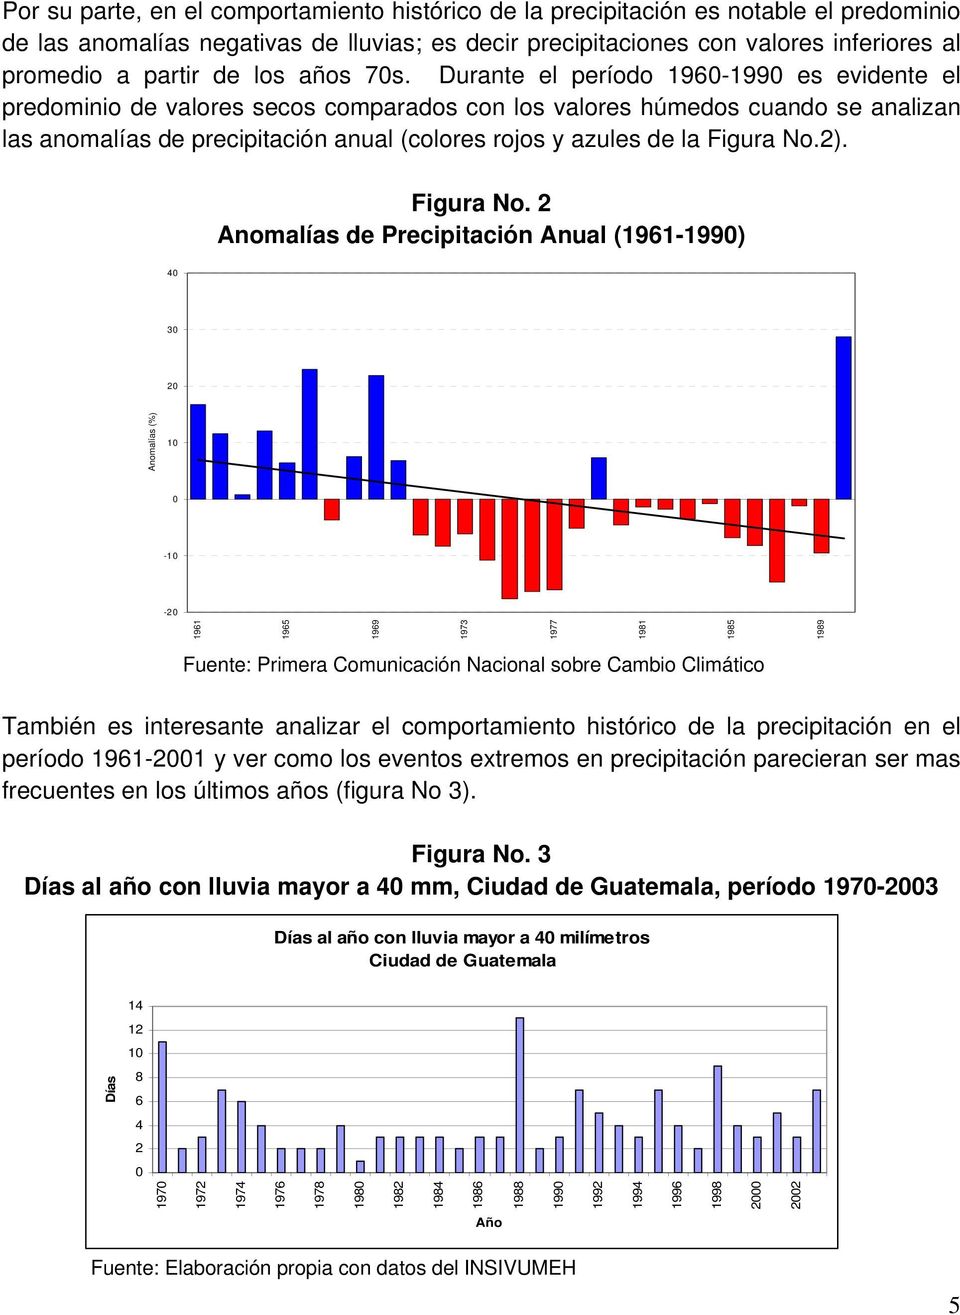 Durante el período 1960-1990 es evidente el predominio de valores secos comparados con los valores húmedos cuando se analizan las anomalías de precipitación anual (colores rojos y azules de la Figura